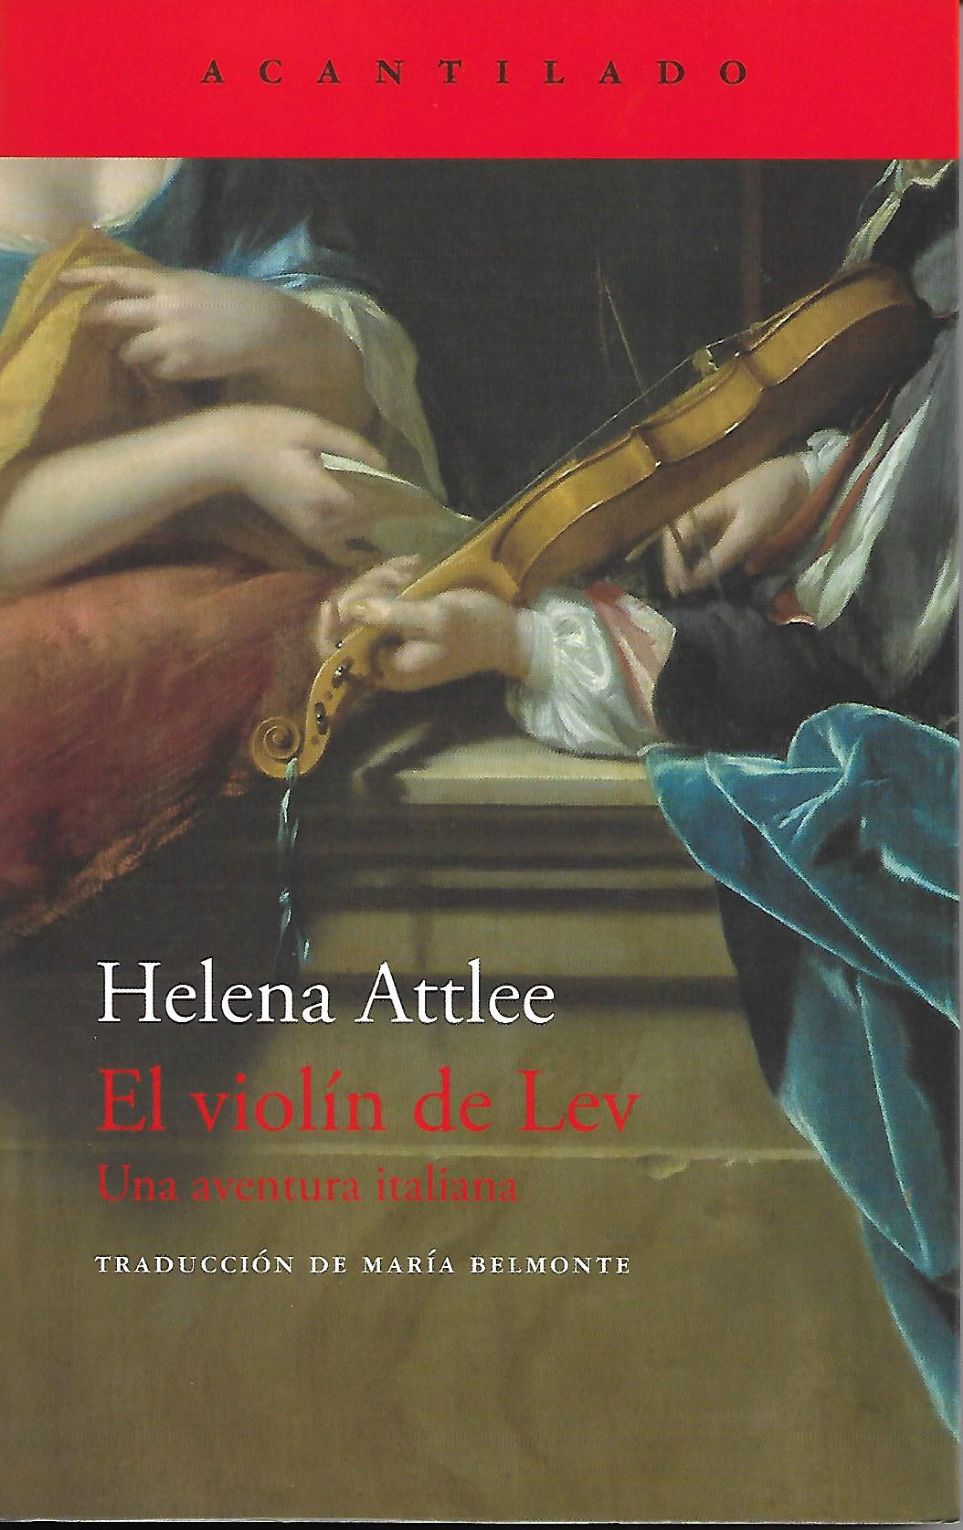 Crítica del libro «El violín de Lev» de Helena Attlee [Acantilado]